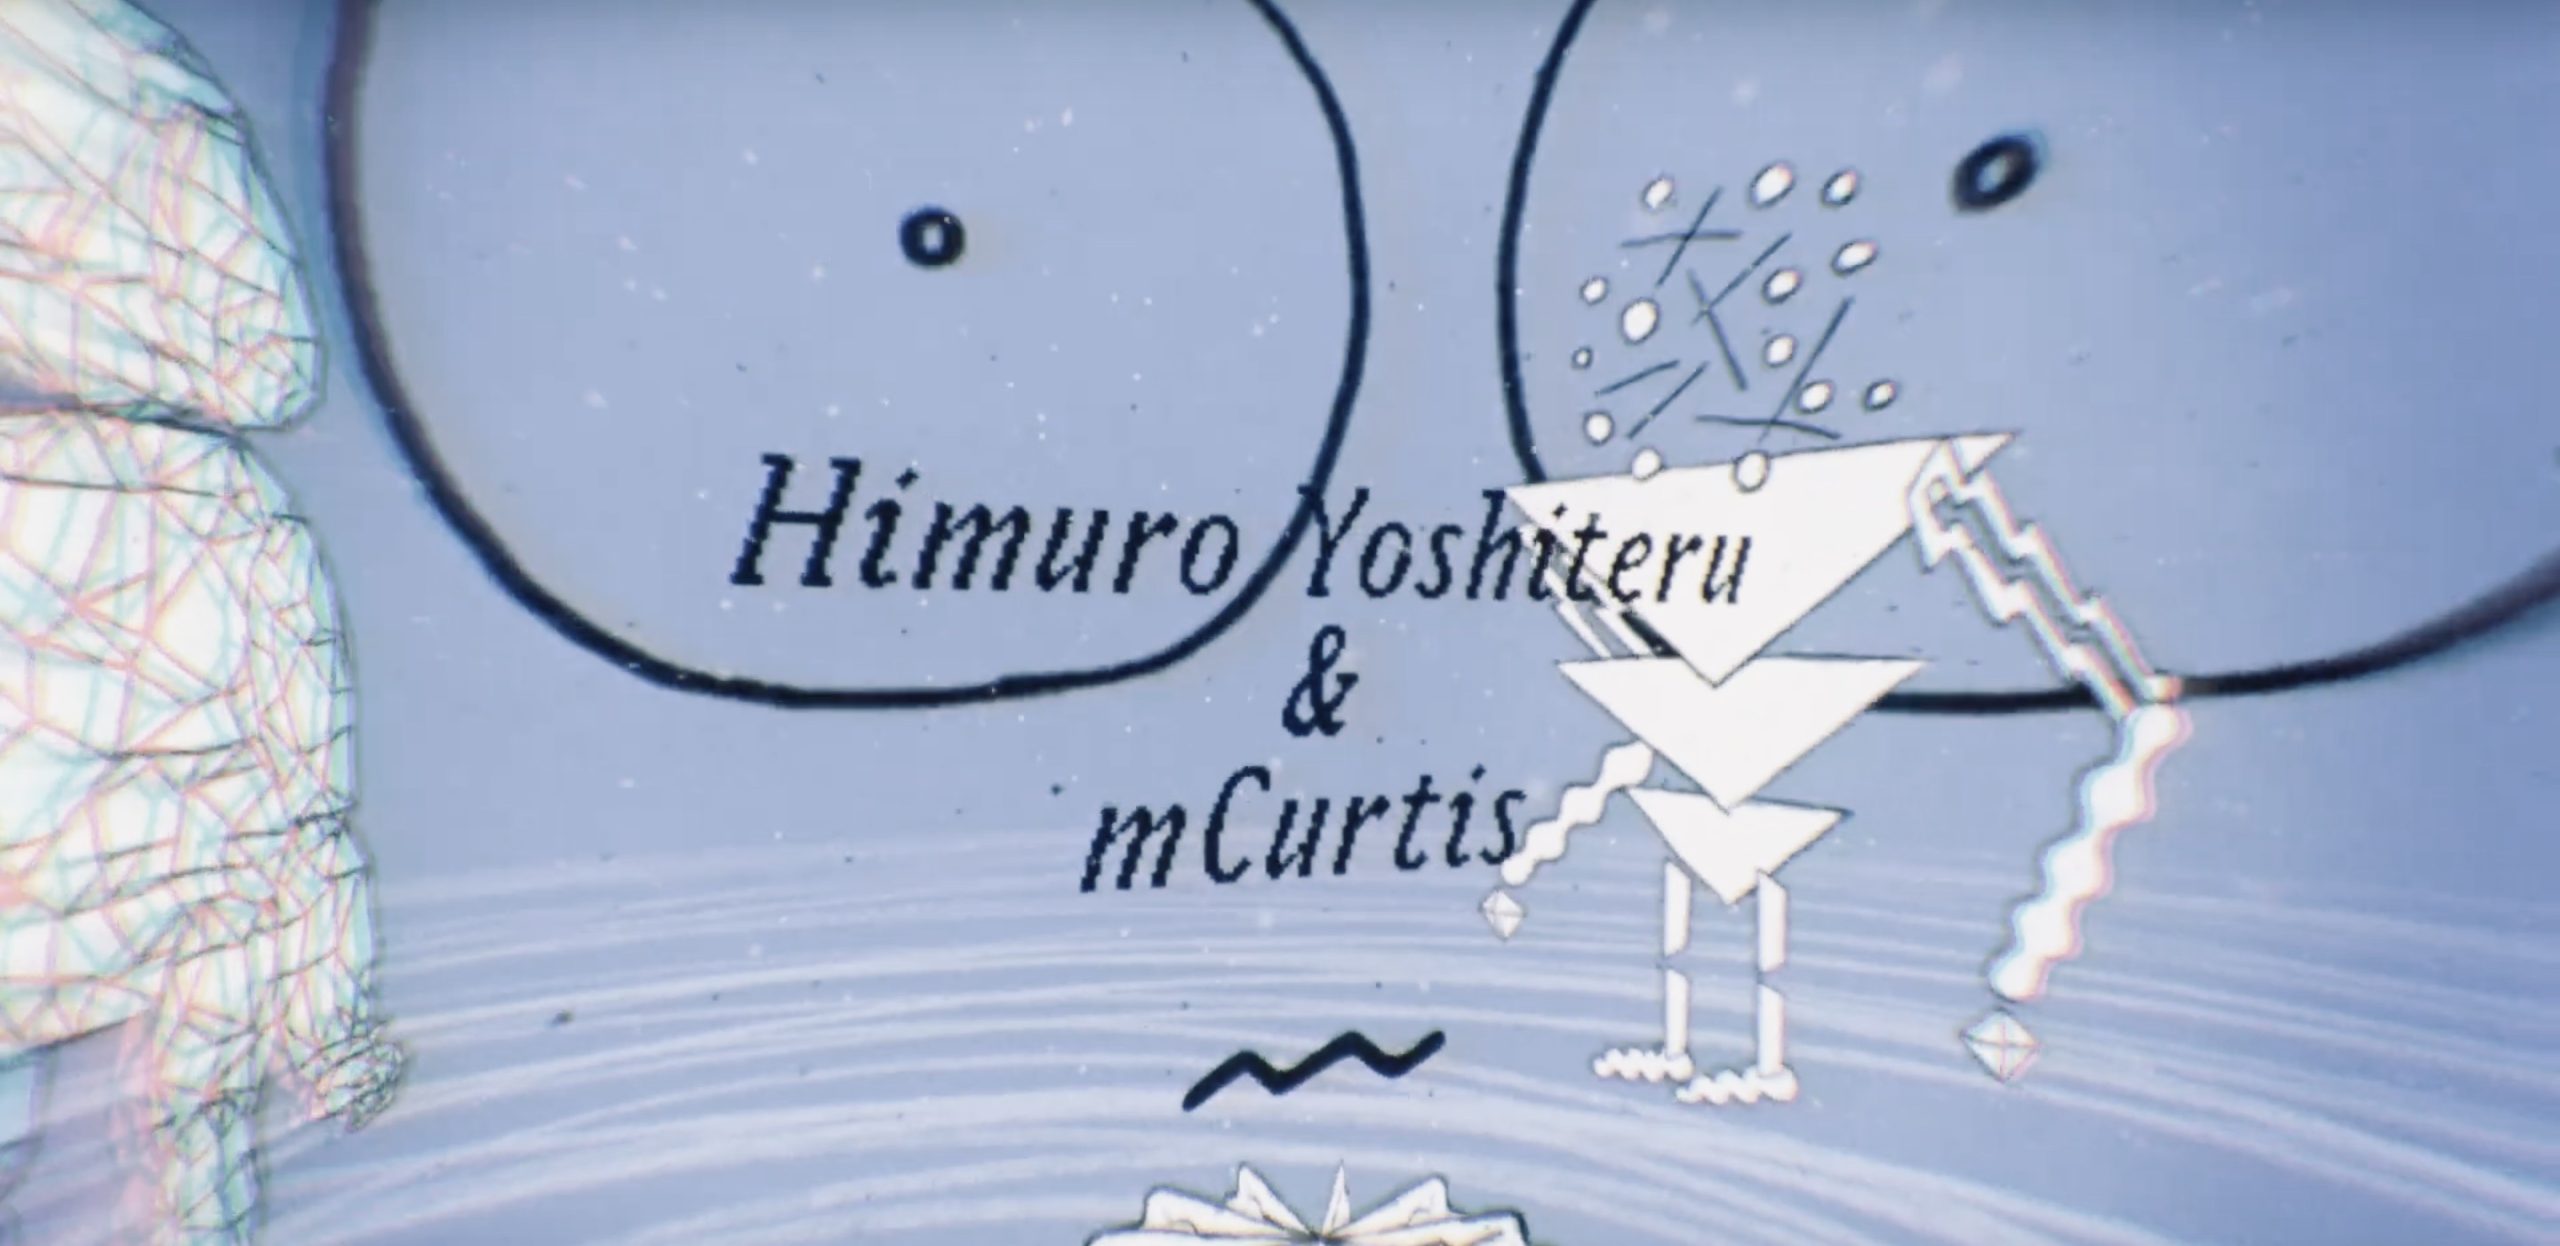 mCurtis και Himuro Yoshiteru “The Dancing Three” | Το space-jazz κομμάτι της ημέρας